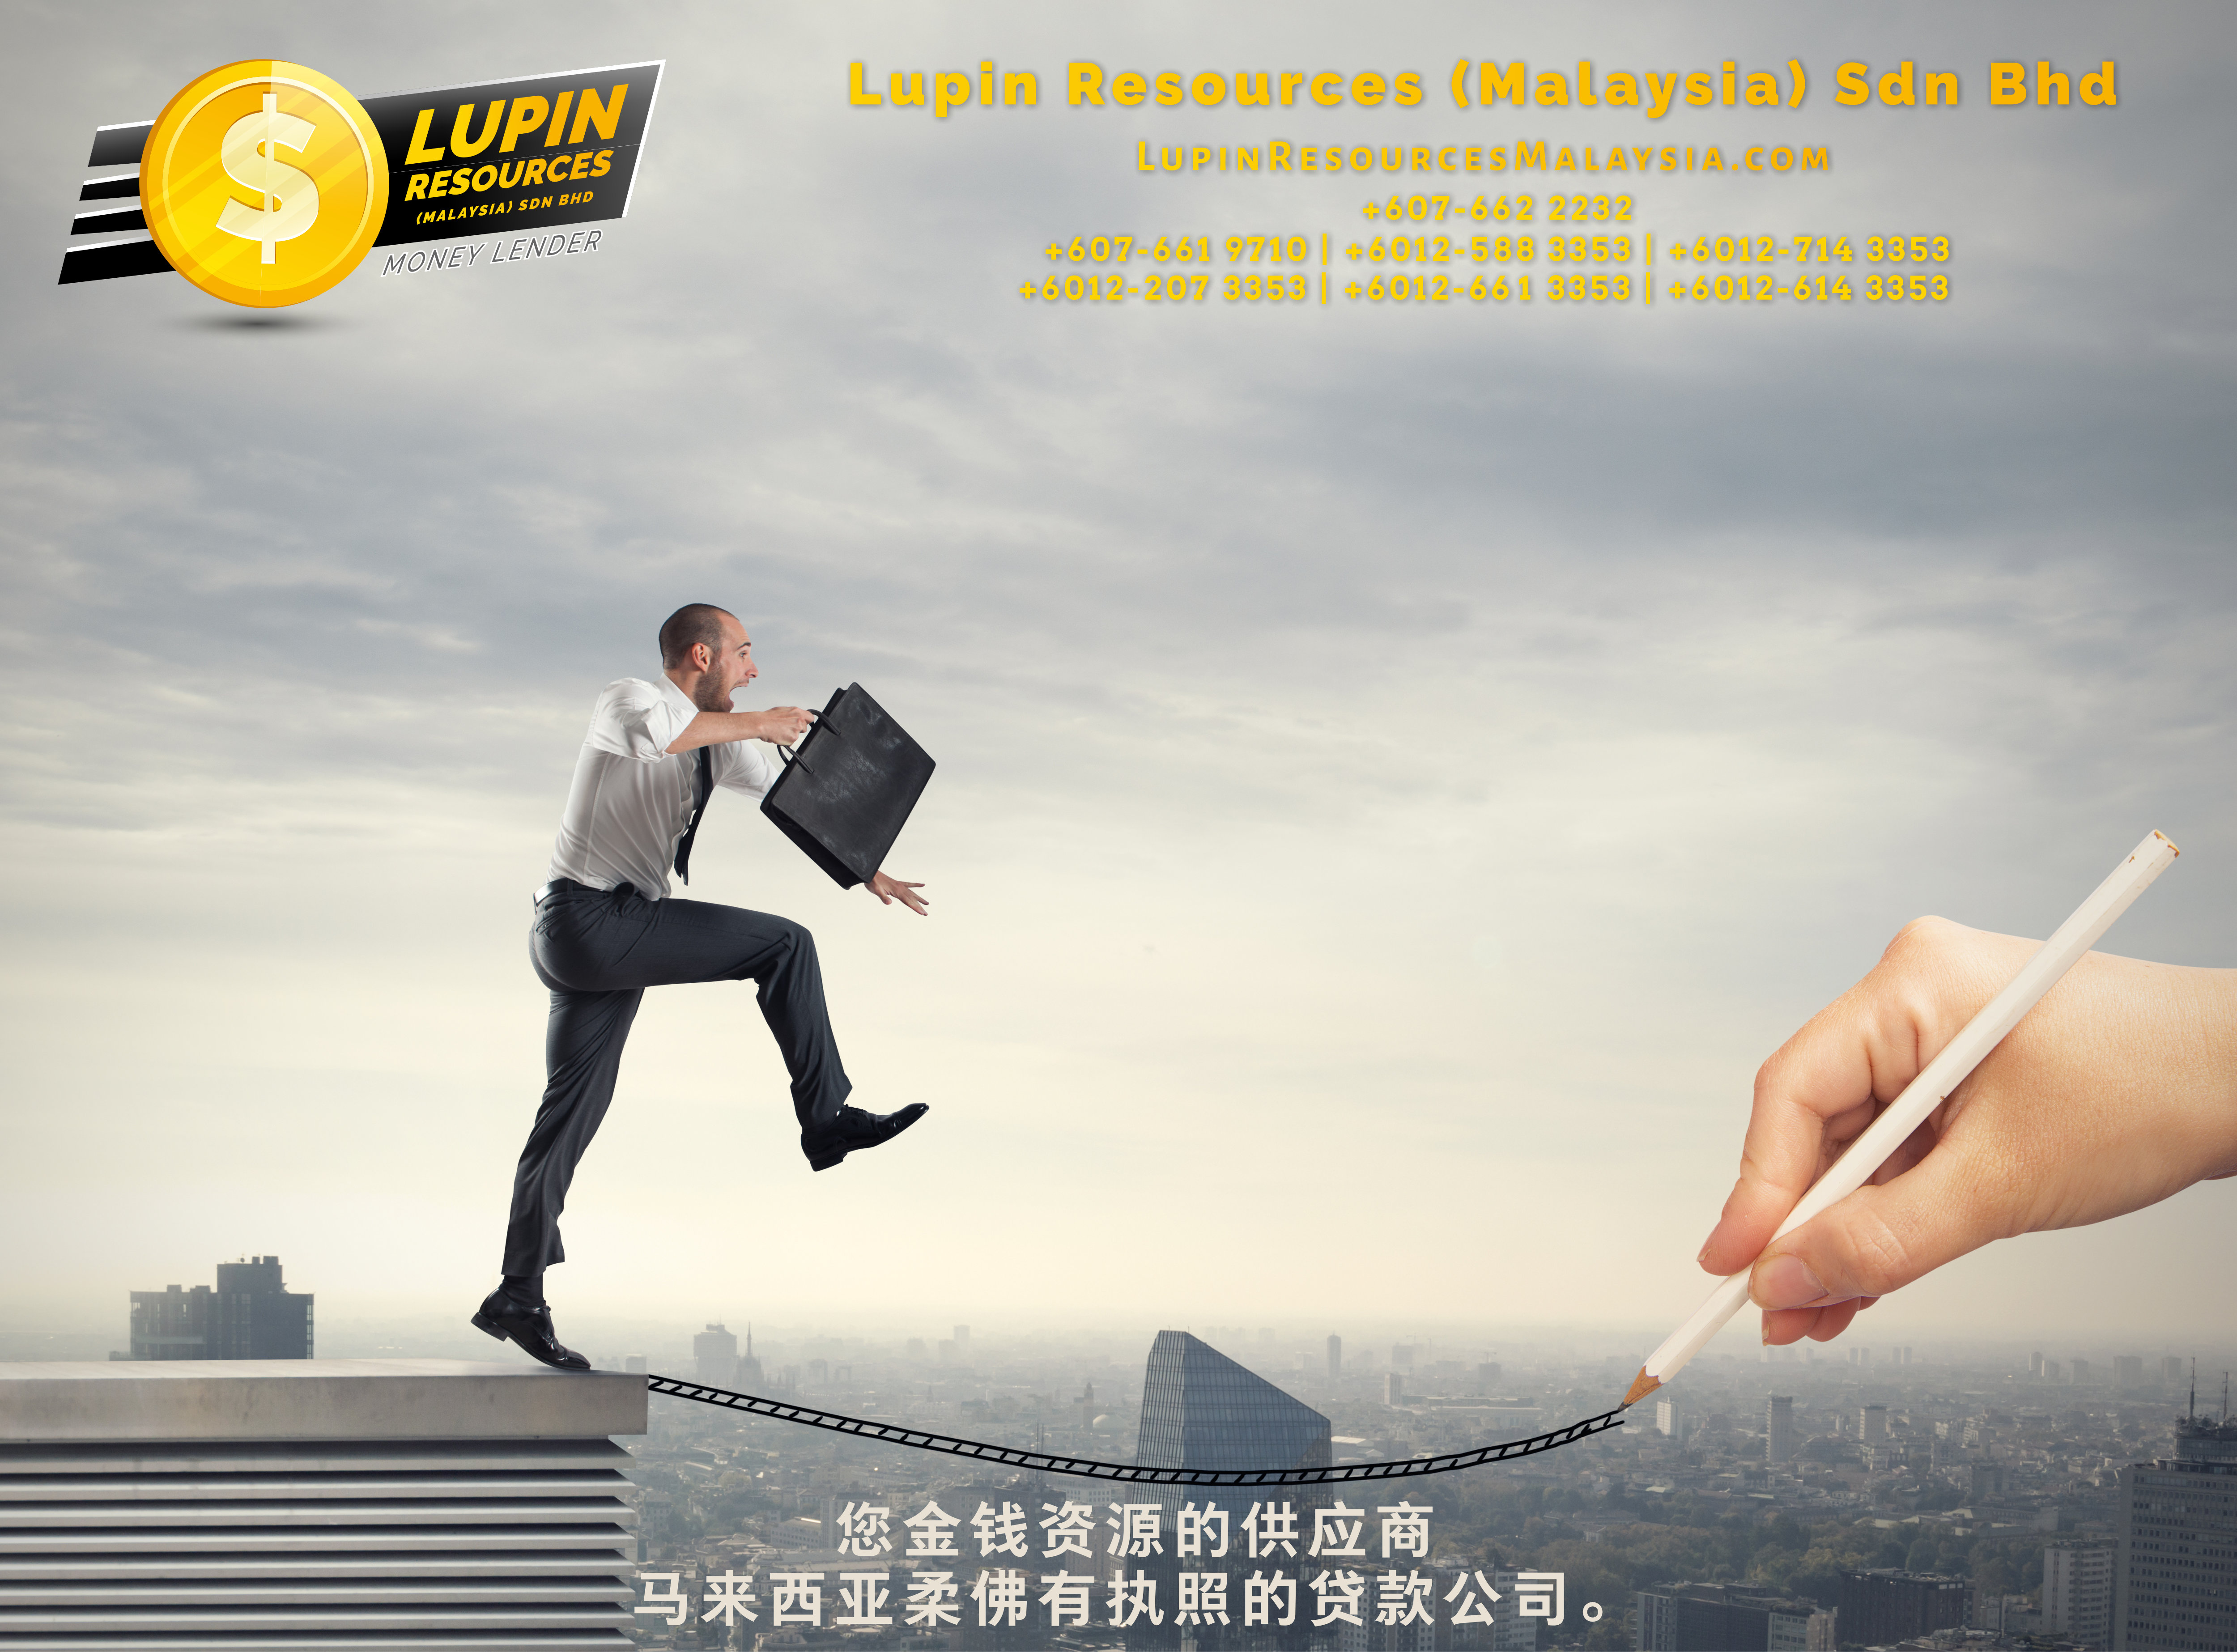 柔佛有执照的贷款公司 Lupin Resources Malaysia SDN BHD 您金钱资源的供应商 古来 柔佛 马来西亚 个人贷款 商业贷款 低利息抵押代款 经济 A01-58